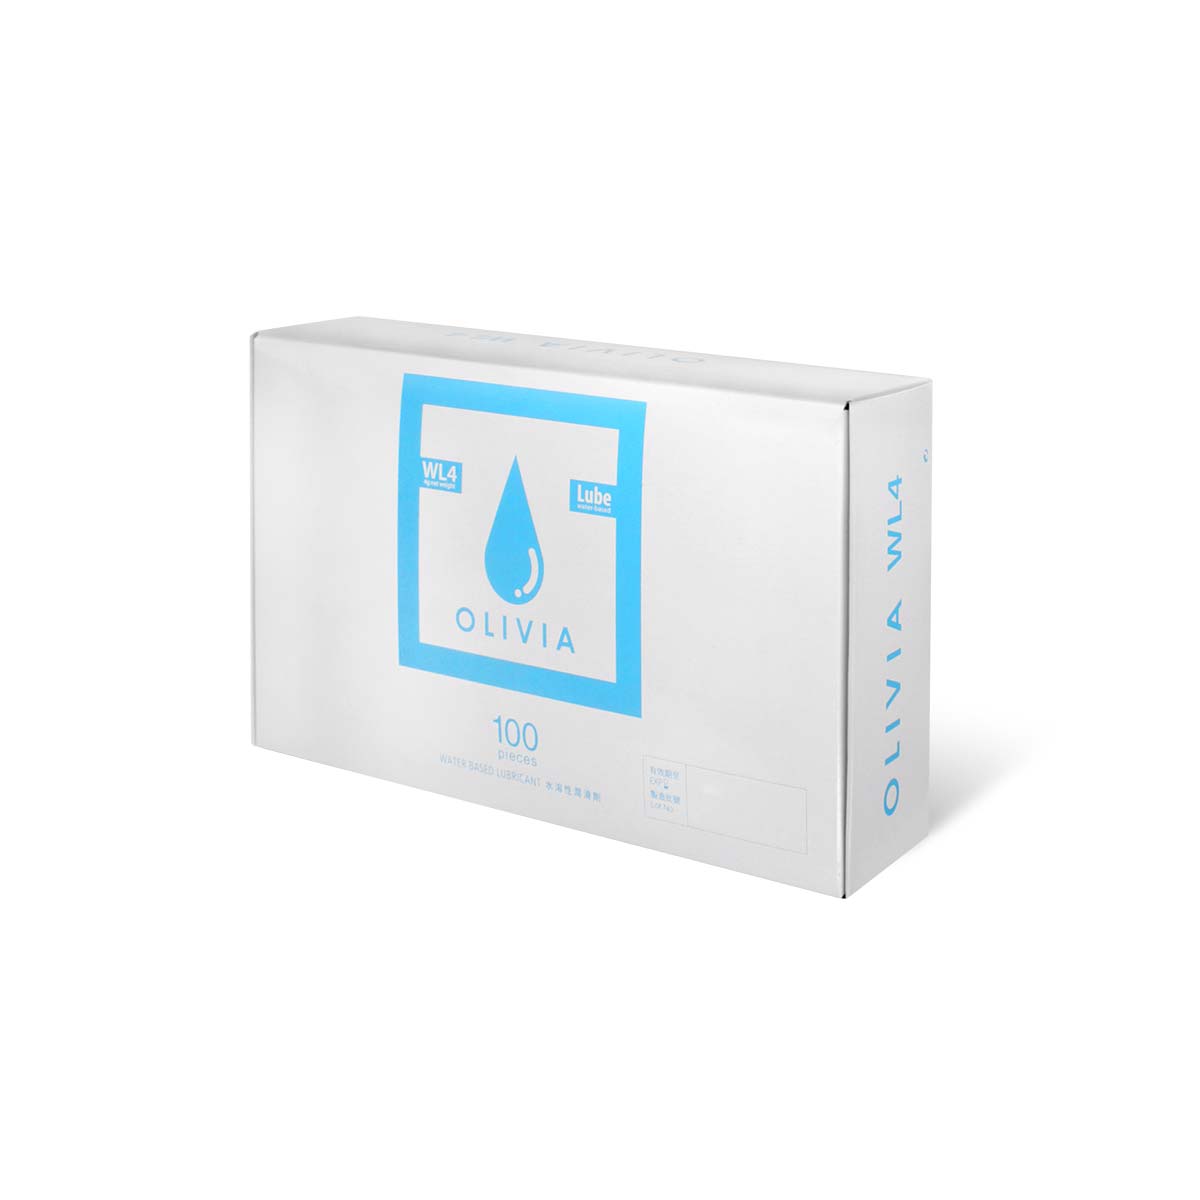 奧莉維亞 WL4 旅行小包裝 100 片裝 水性潤滑劑 (短效期)-p_1